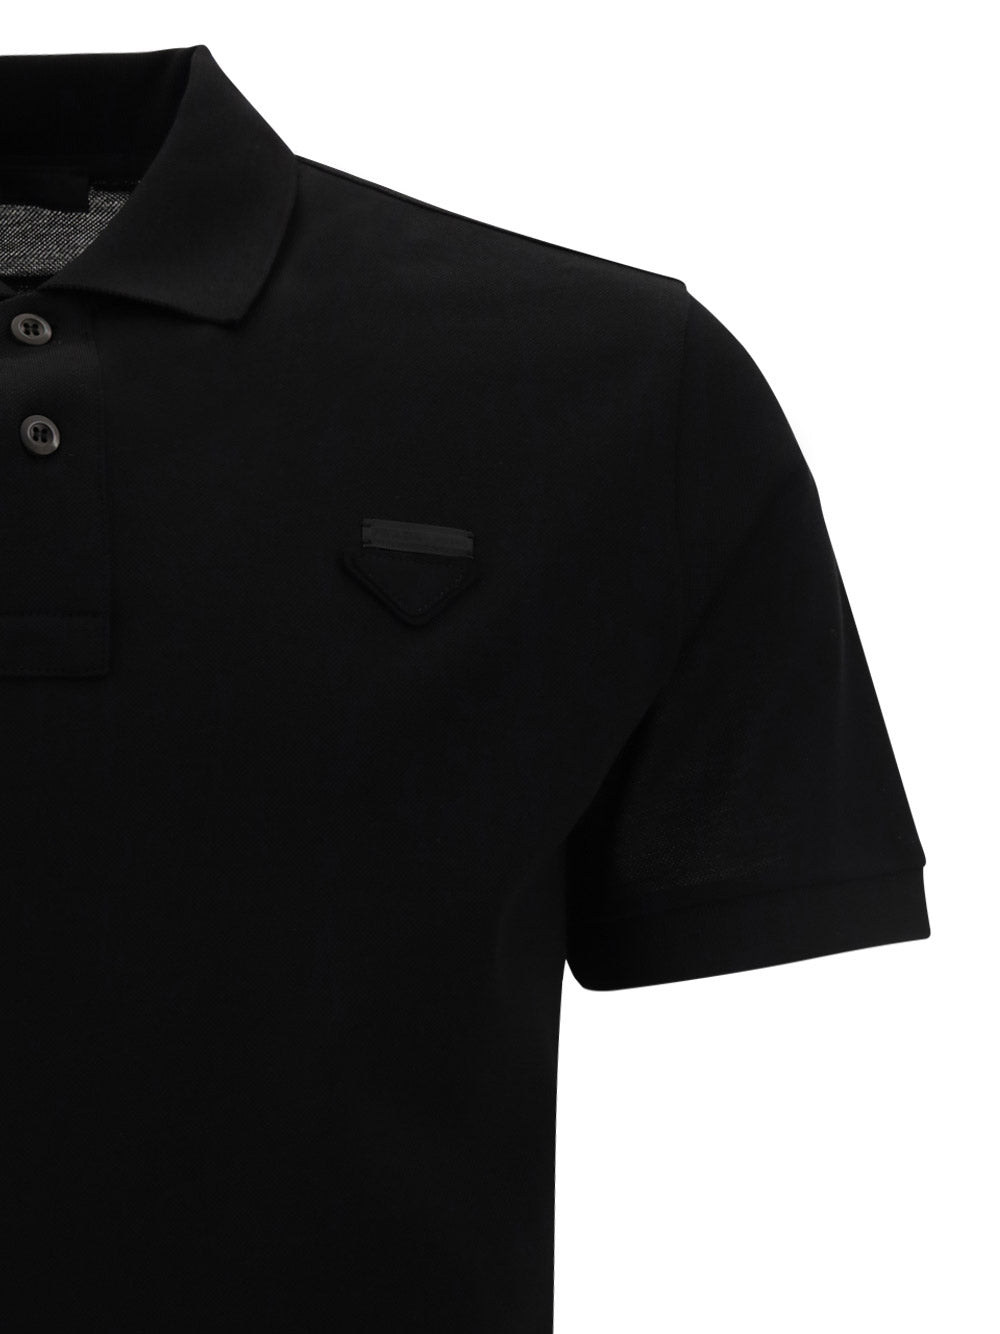 Piqué Polo Shirt - Black